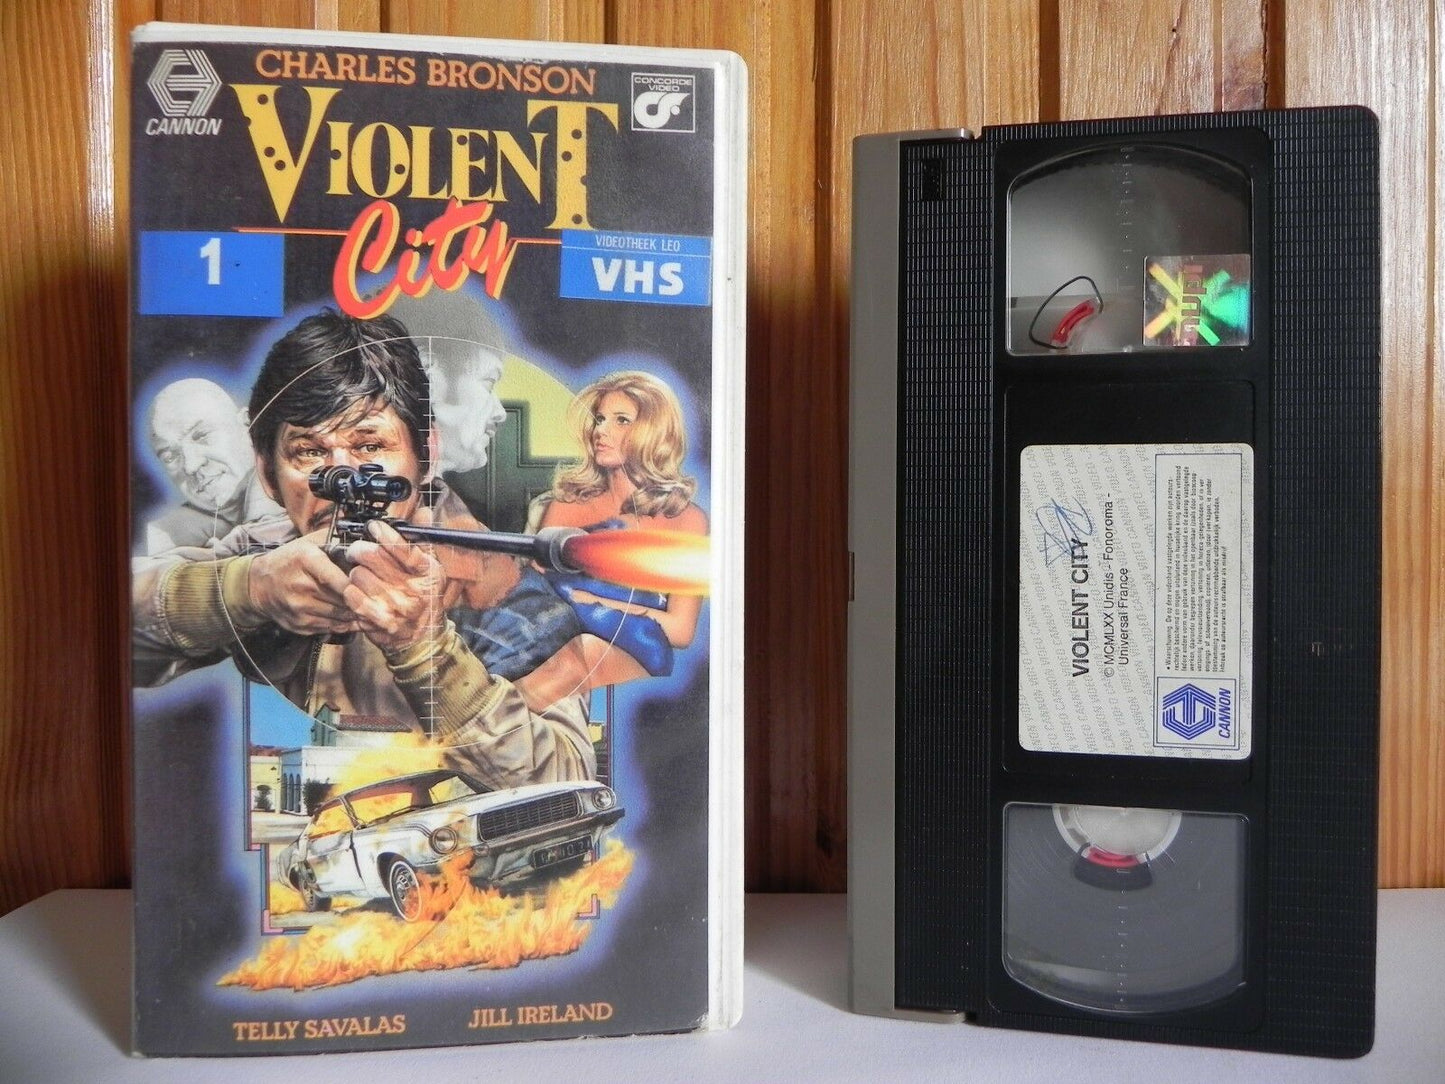 Violent City: Città violenta; The Family (1970) - C.Bronson/Hitman Action - VHS-